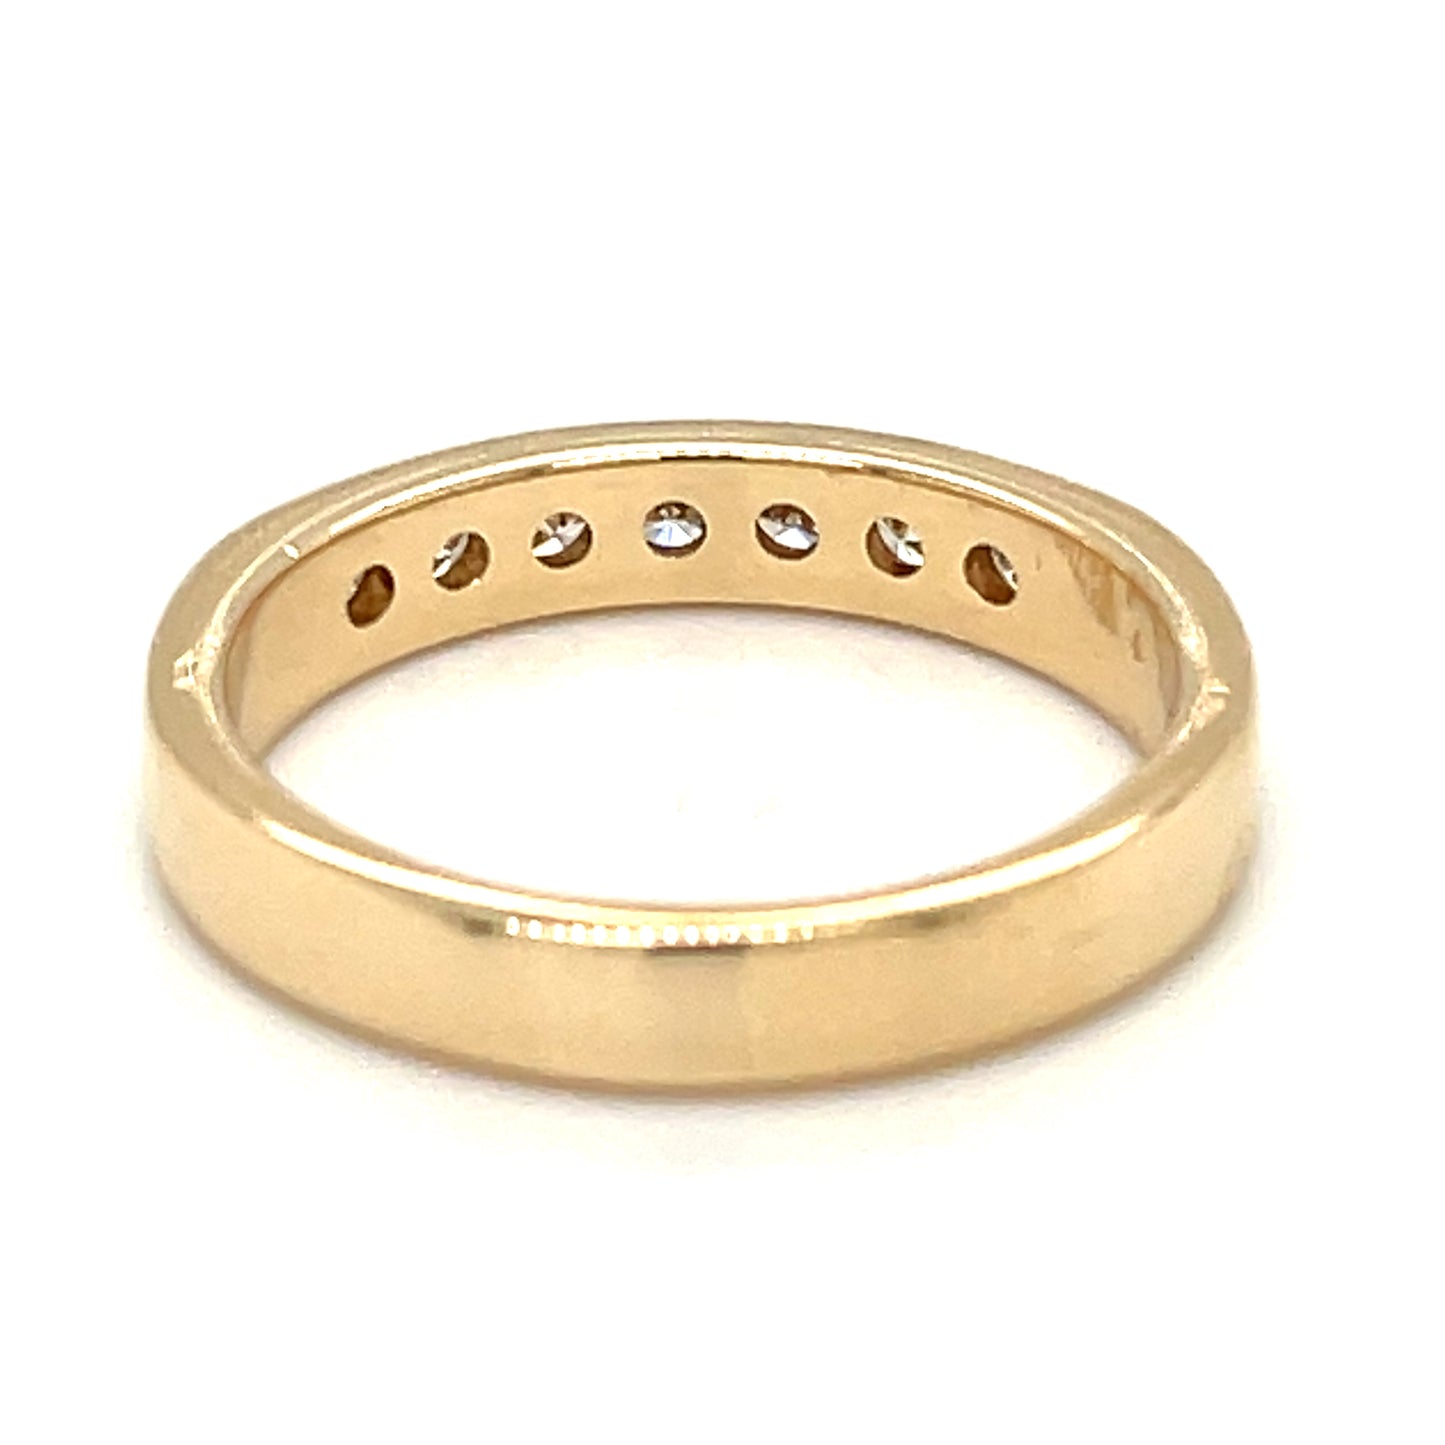 Diamond Engagement Band Estate Ring in 14-Karat Yellow Gold